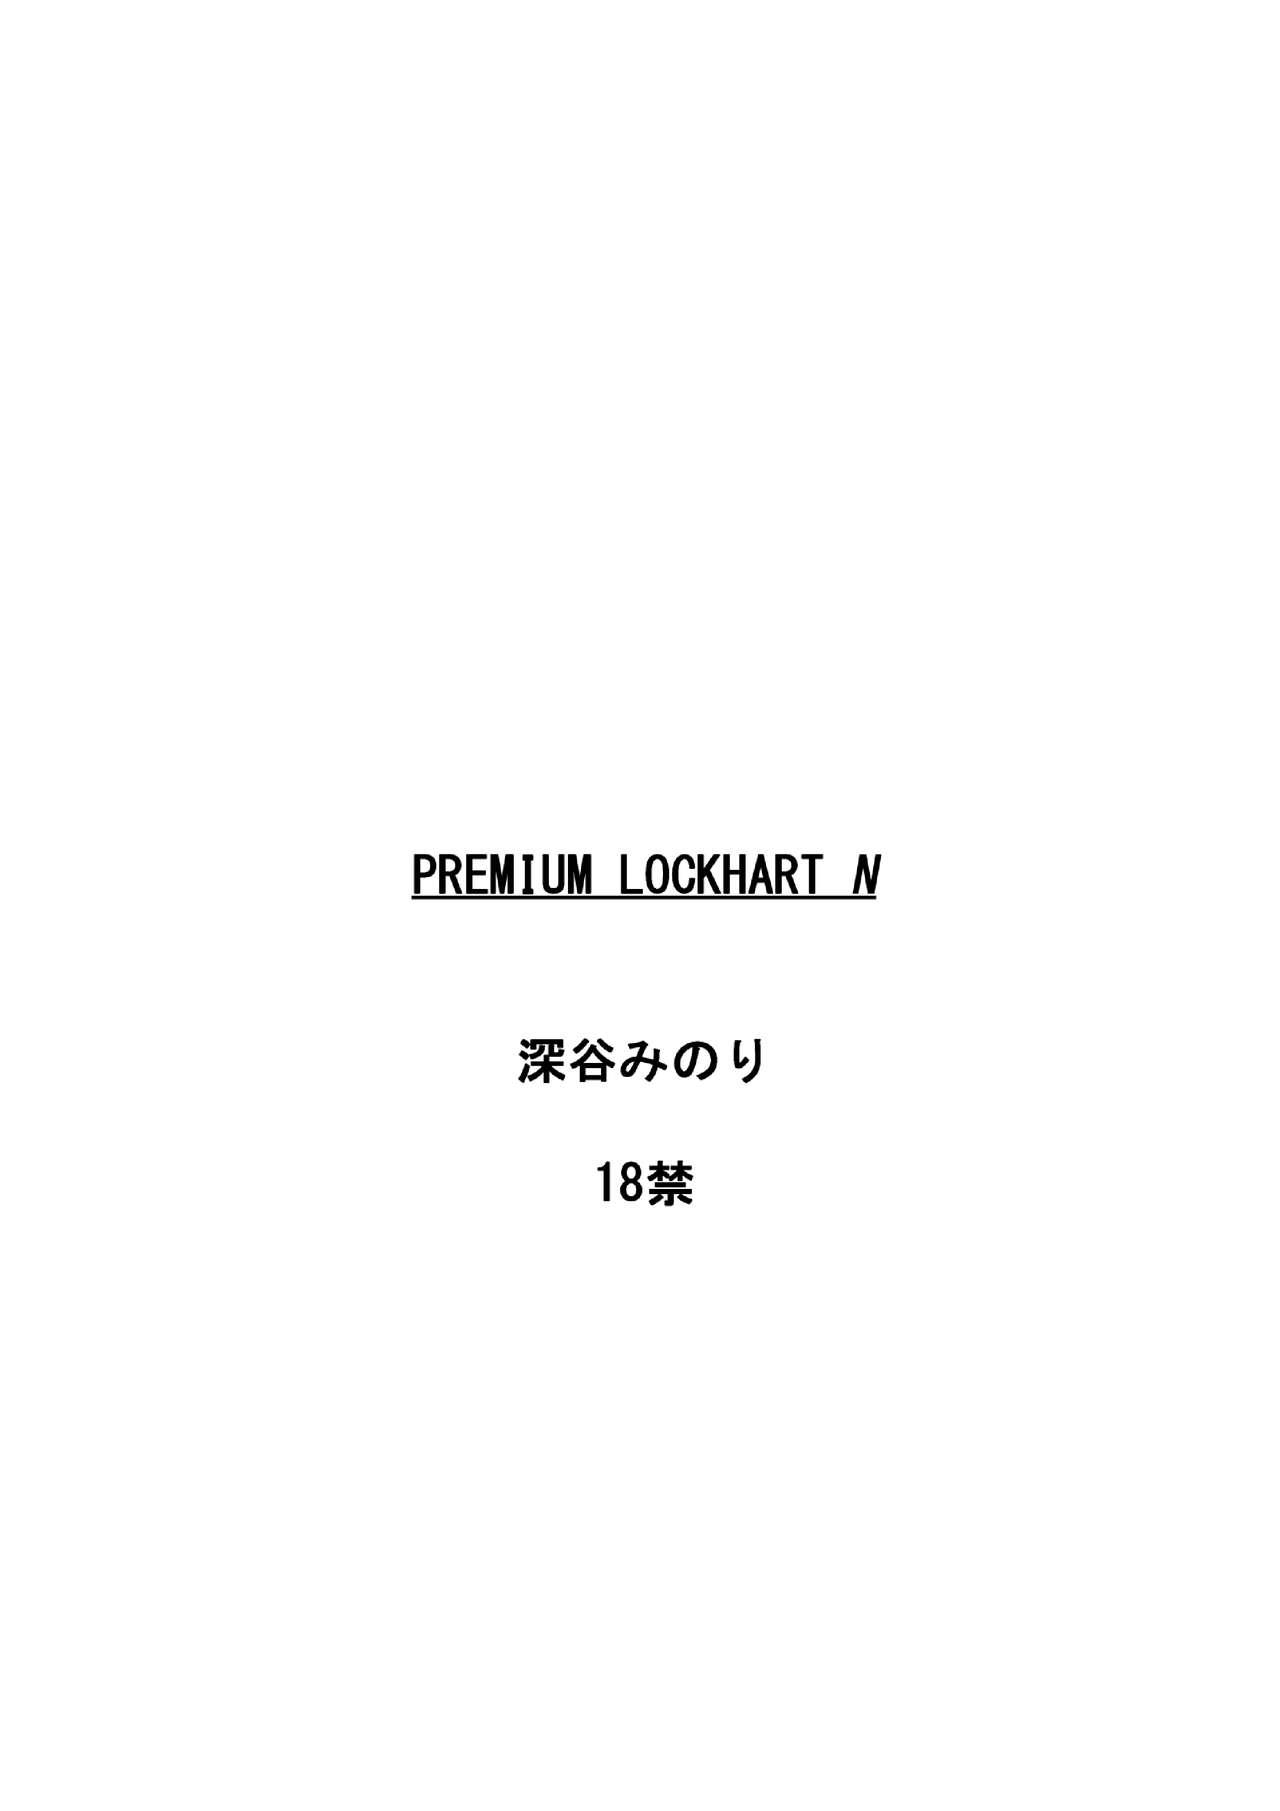 Premium Lockhart N 29